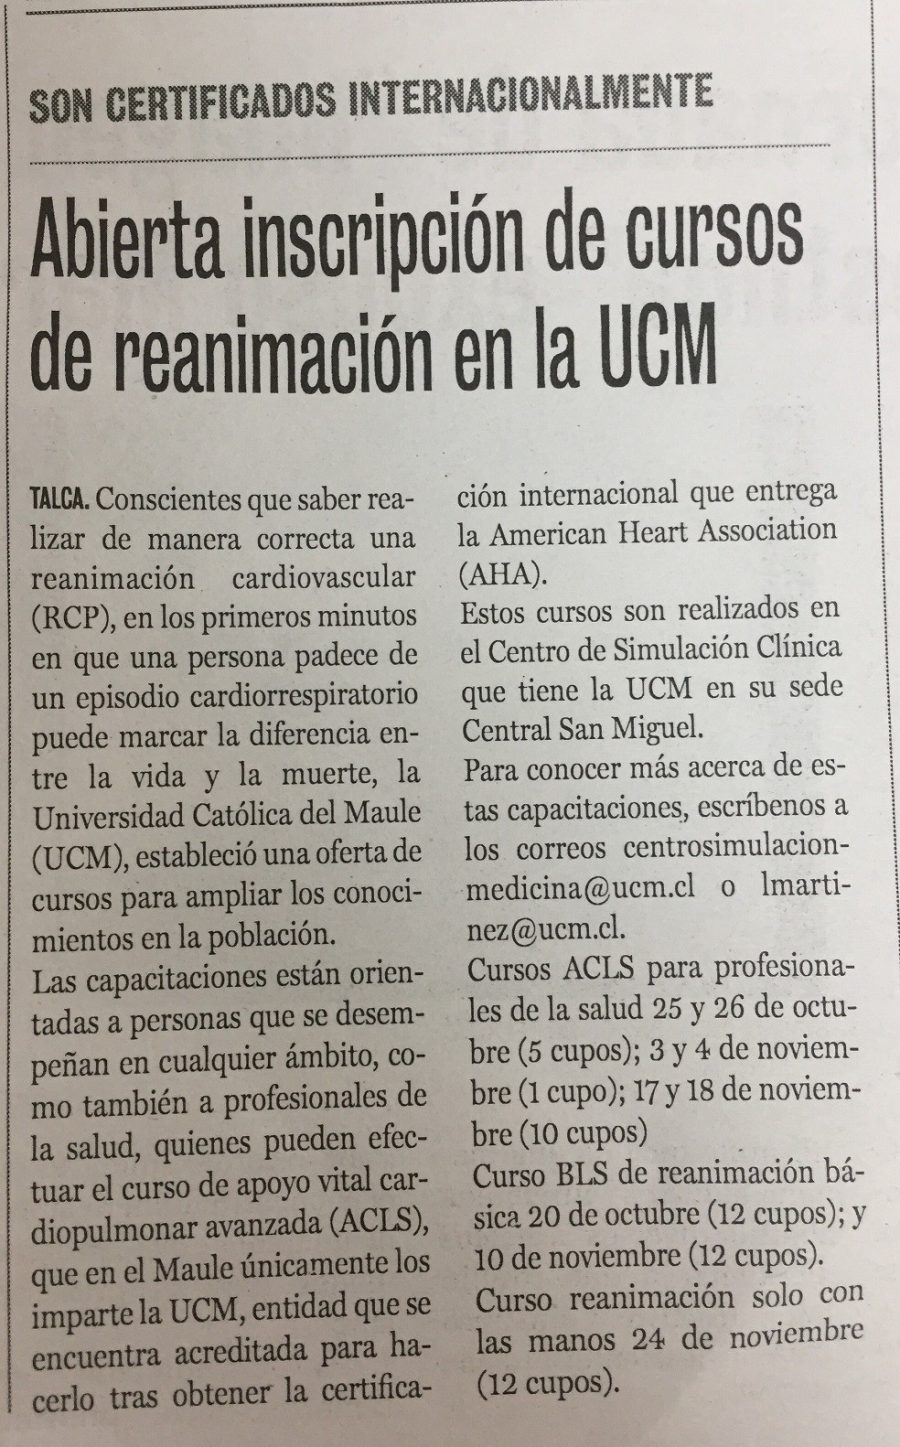 06 de octubre en Diario La Prensa: “Abierta inscripción de cursos de reanimación en la UCM”